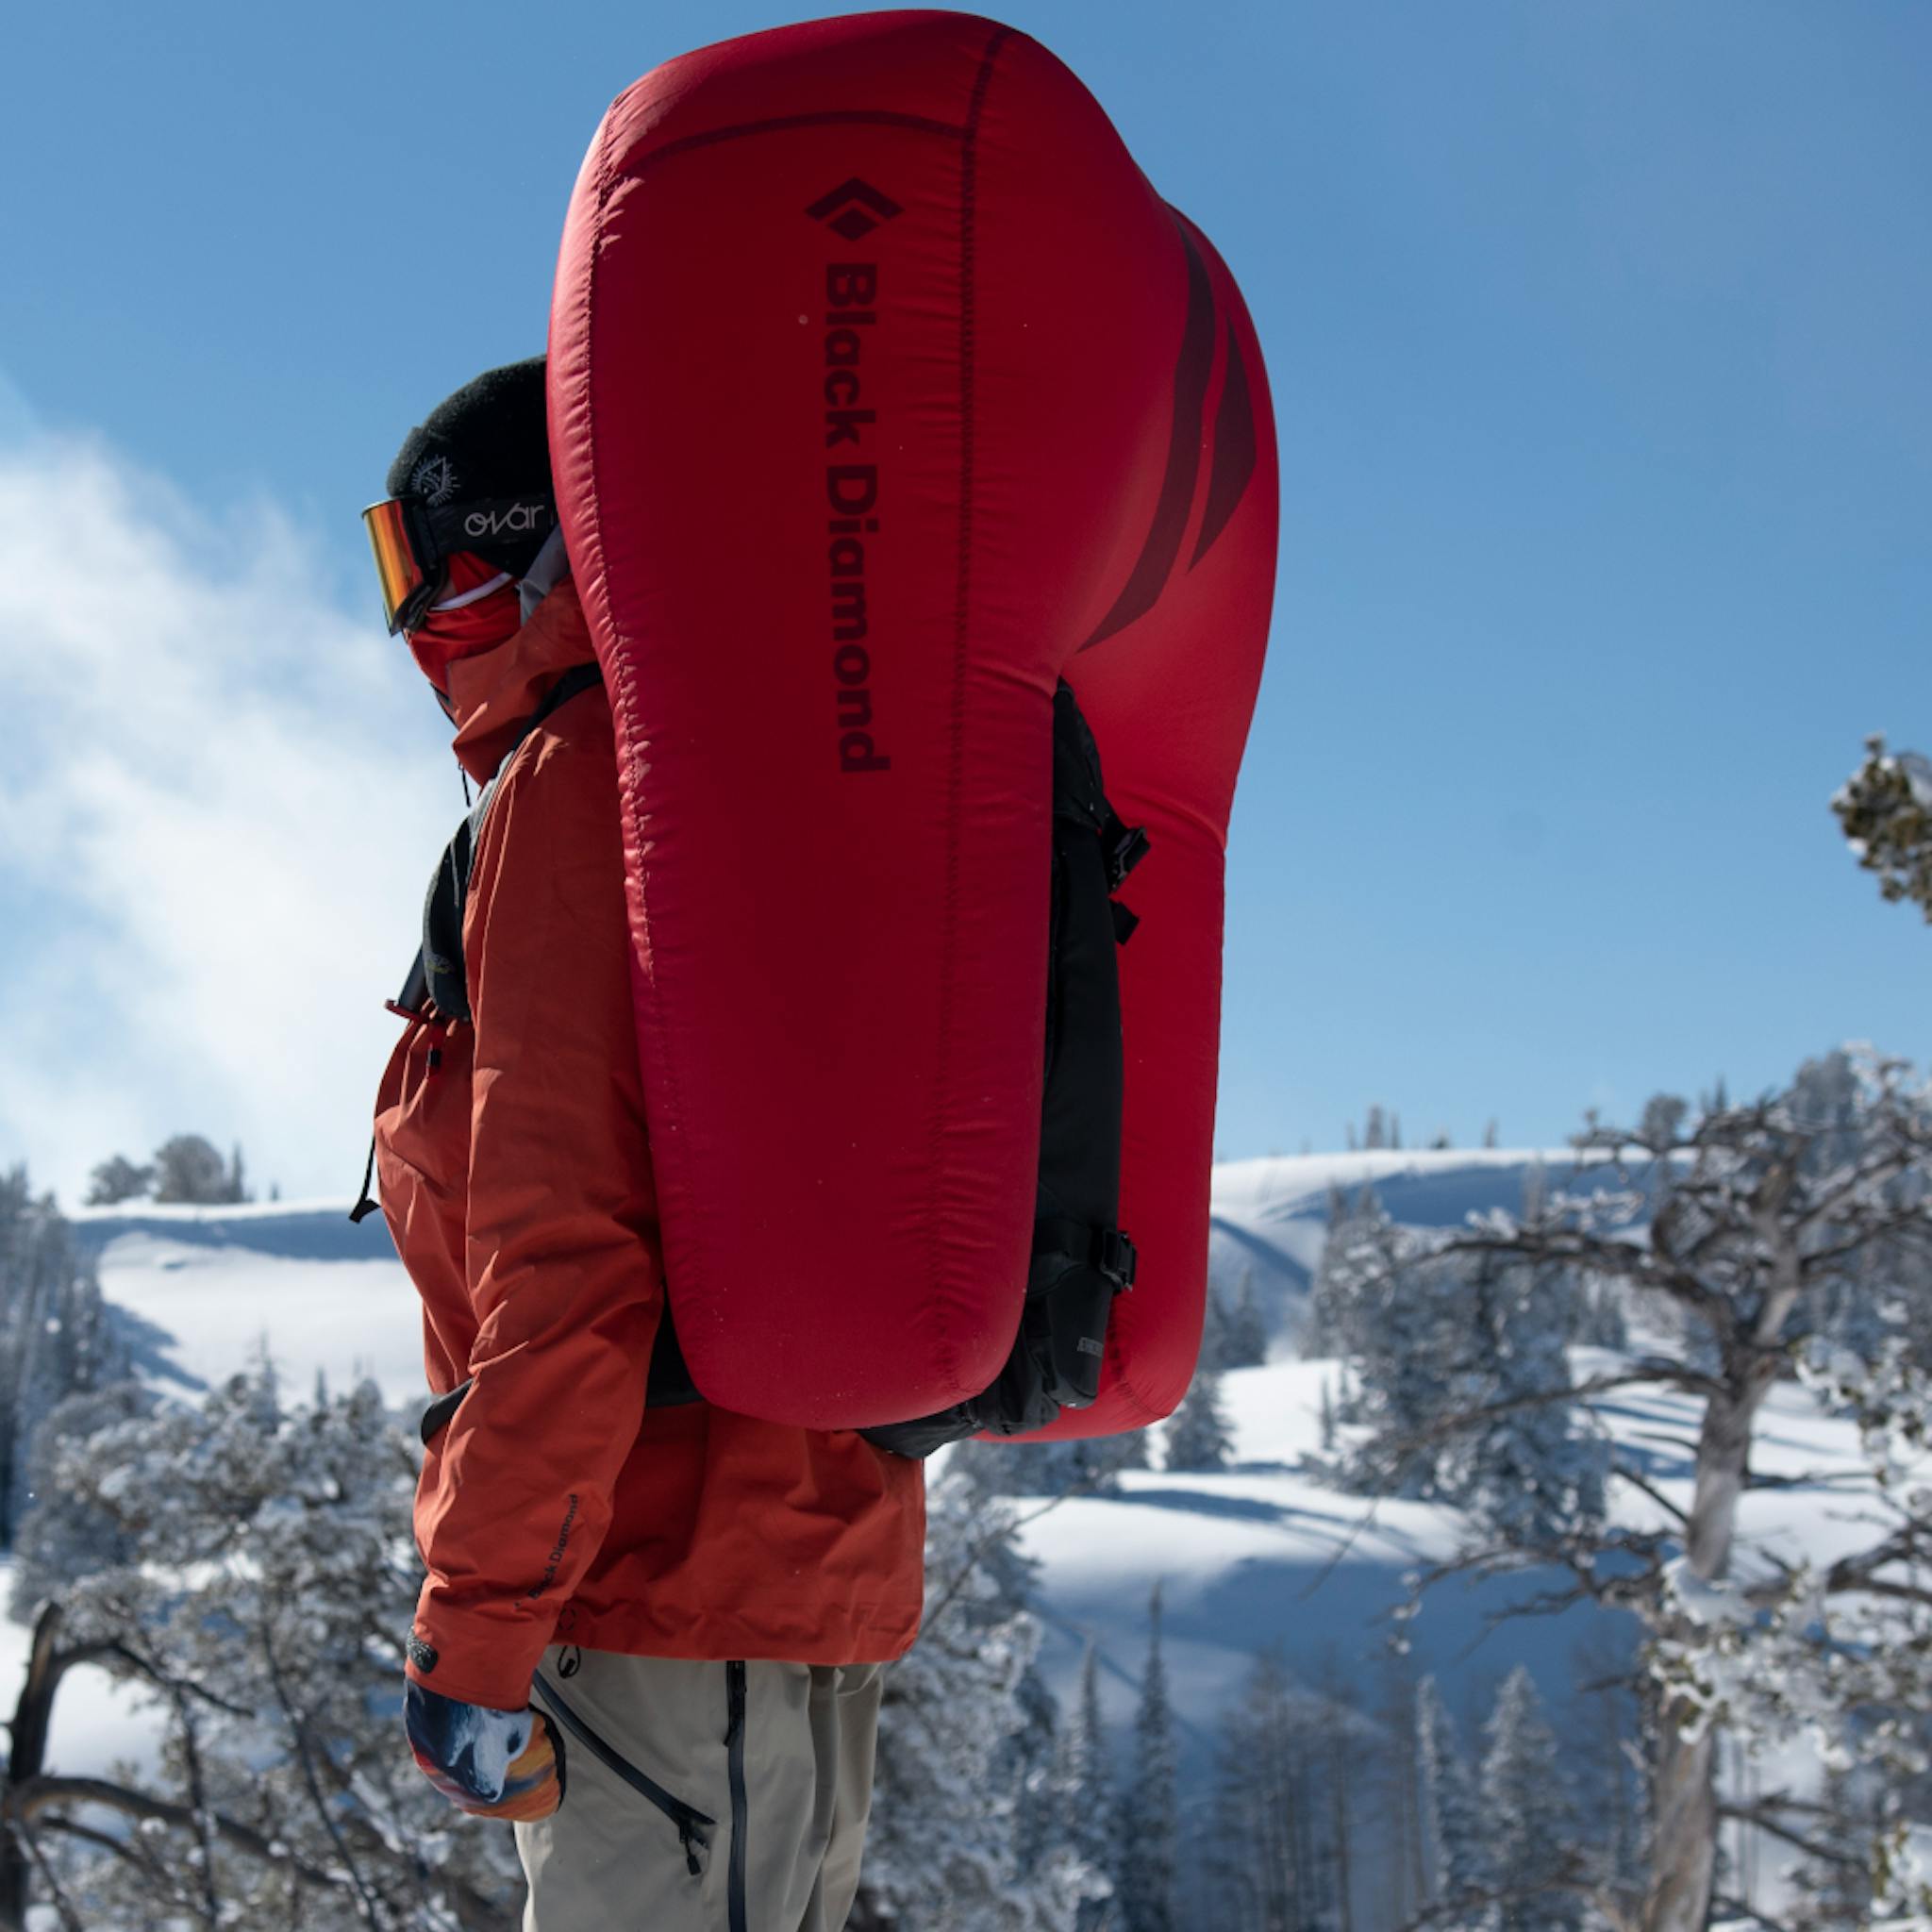 Ein Snowboarder steht mit einem ausgelösten Jetforce-Rucksack vor der Kamera.